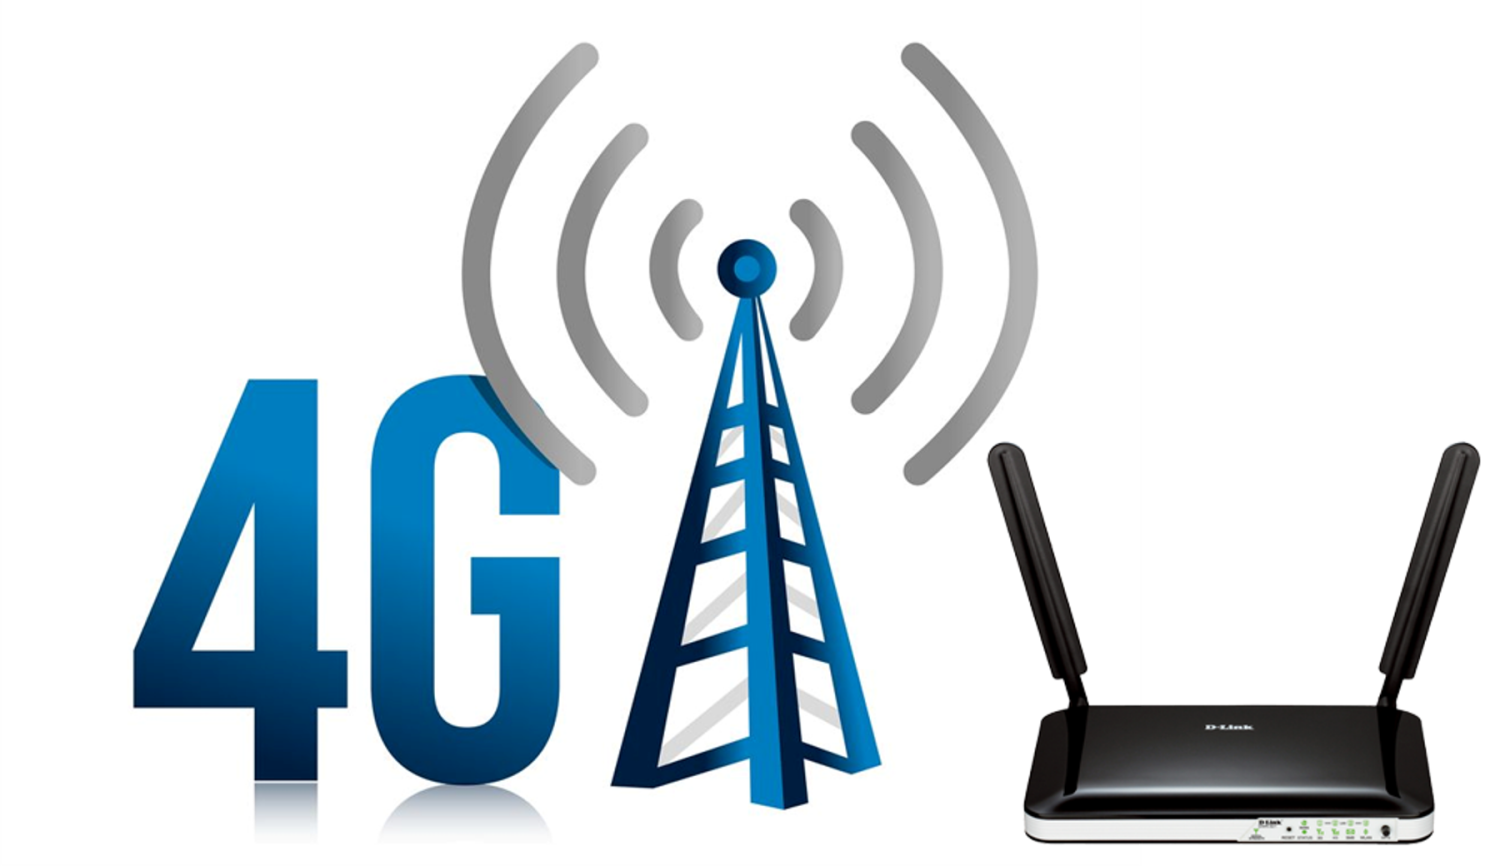 Мобильный интернет вход. Сети сотовой связи 4g. 4g LTE. 3g 4g LTE device. Мобильная сеть 4g (WIMAX va LTE).